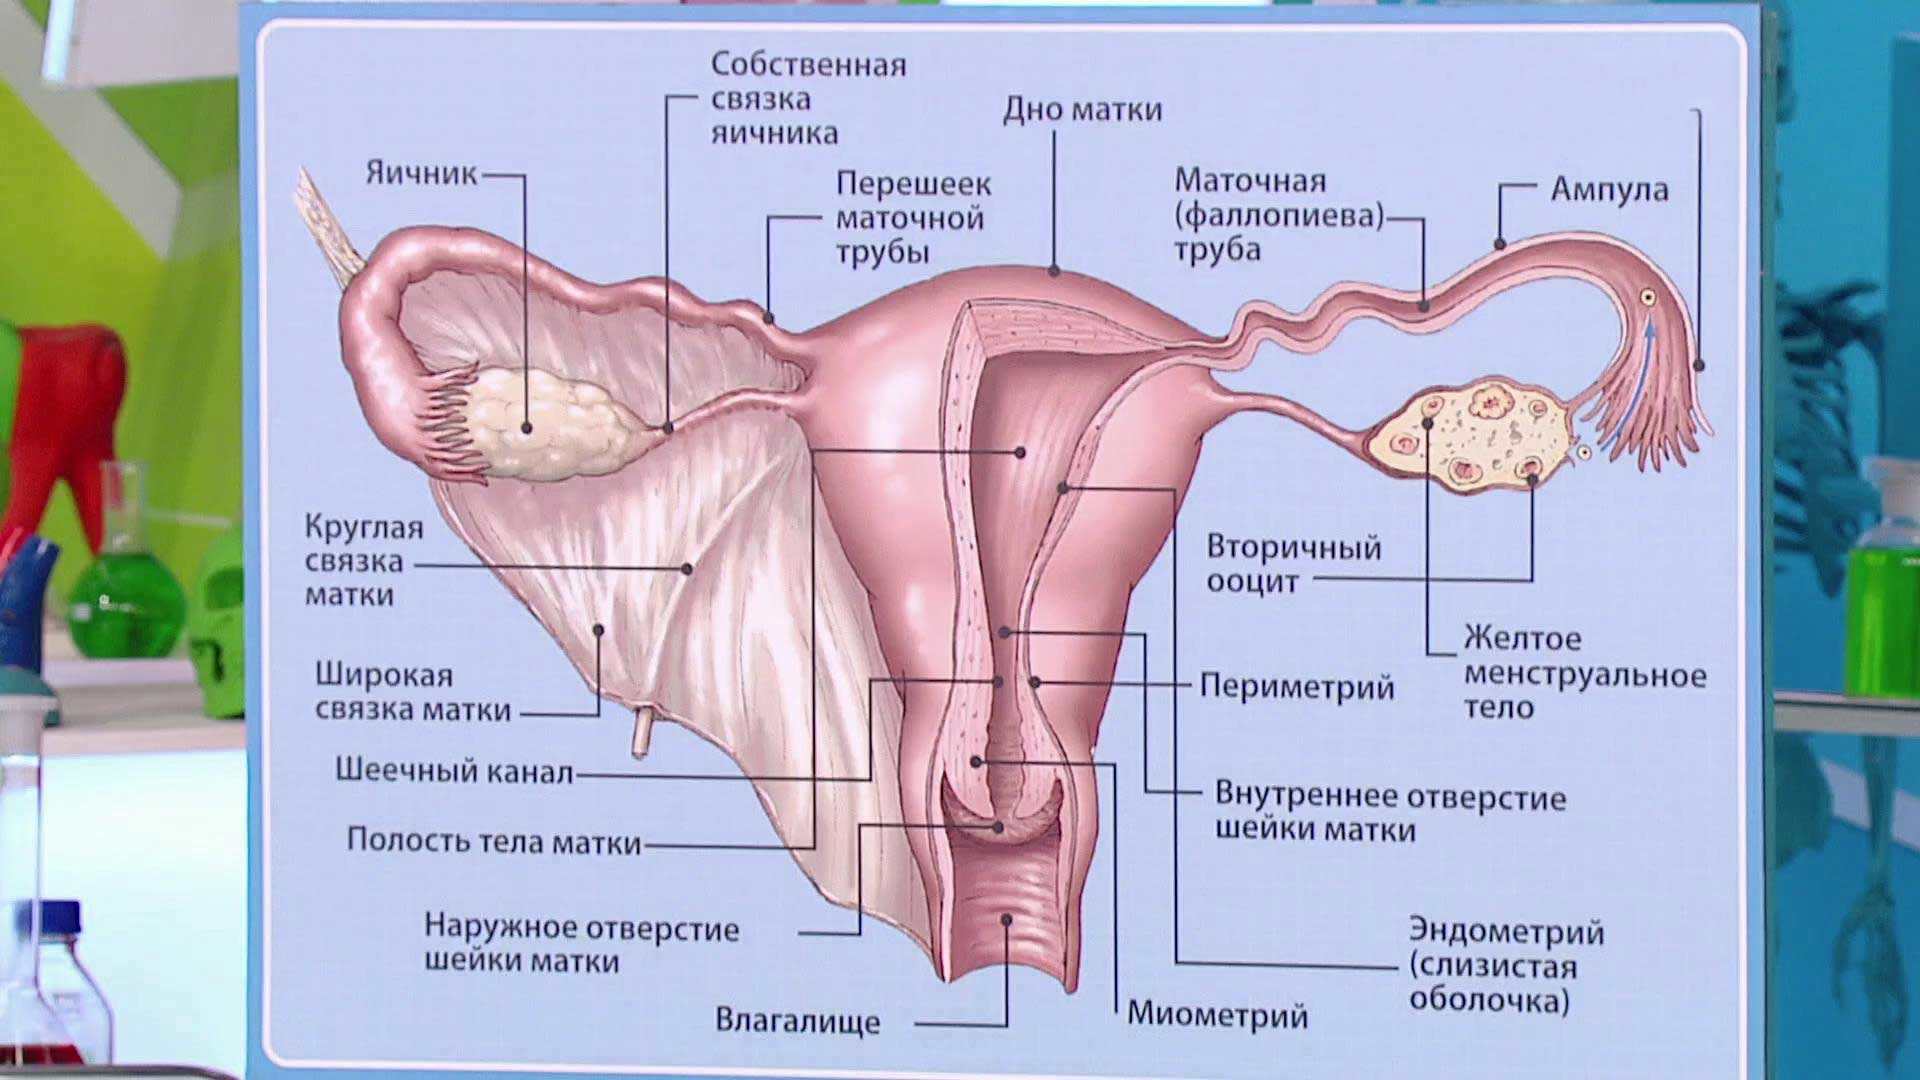 воспаление яичников у женщин фото